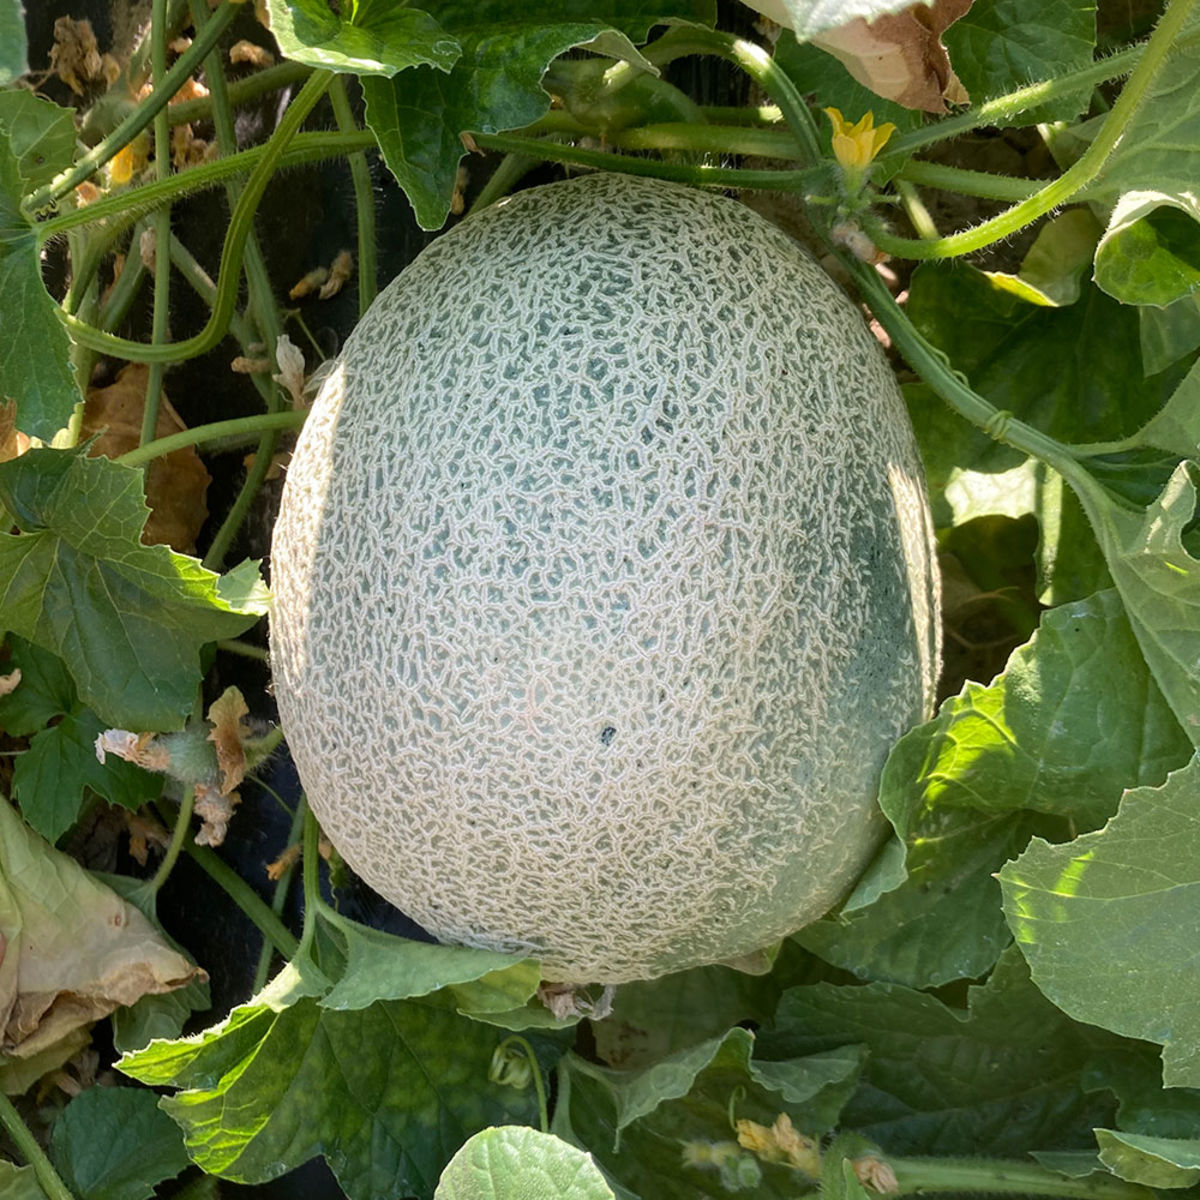 Melon vert - Les Paysans d'ailleurs